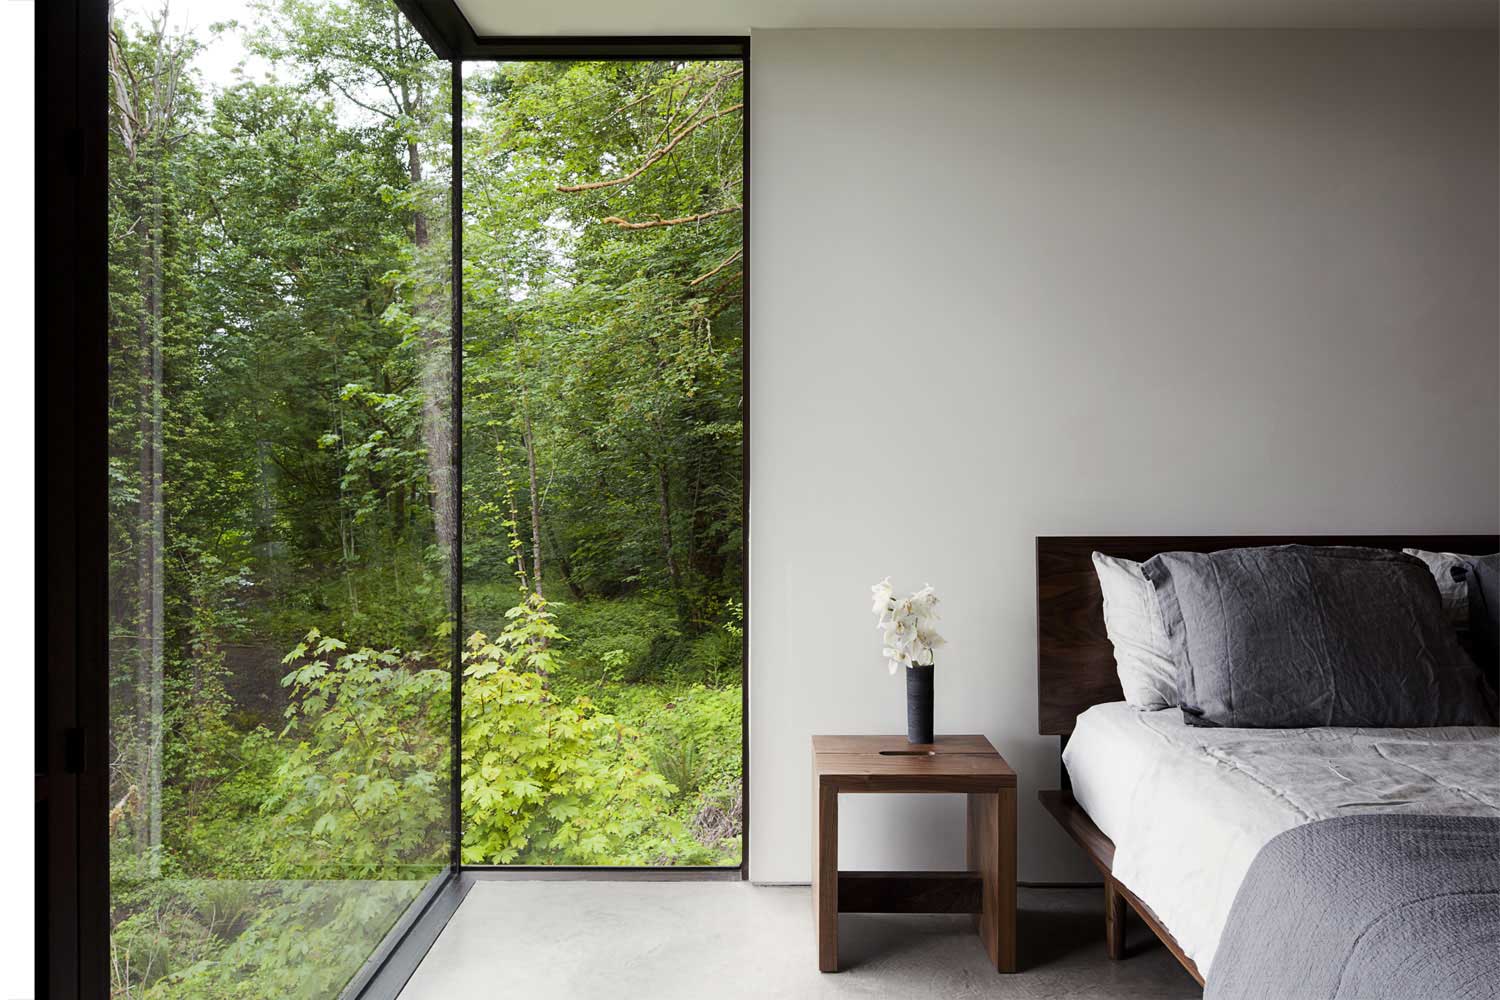 Thiết kế phòng ngủ gần gũi với thiên nhiên